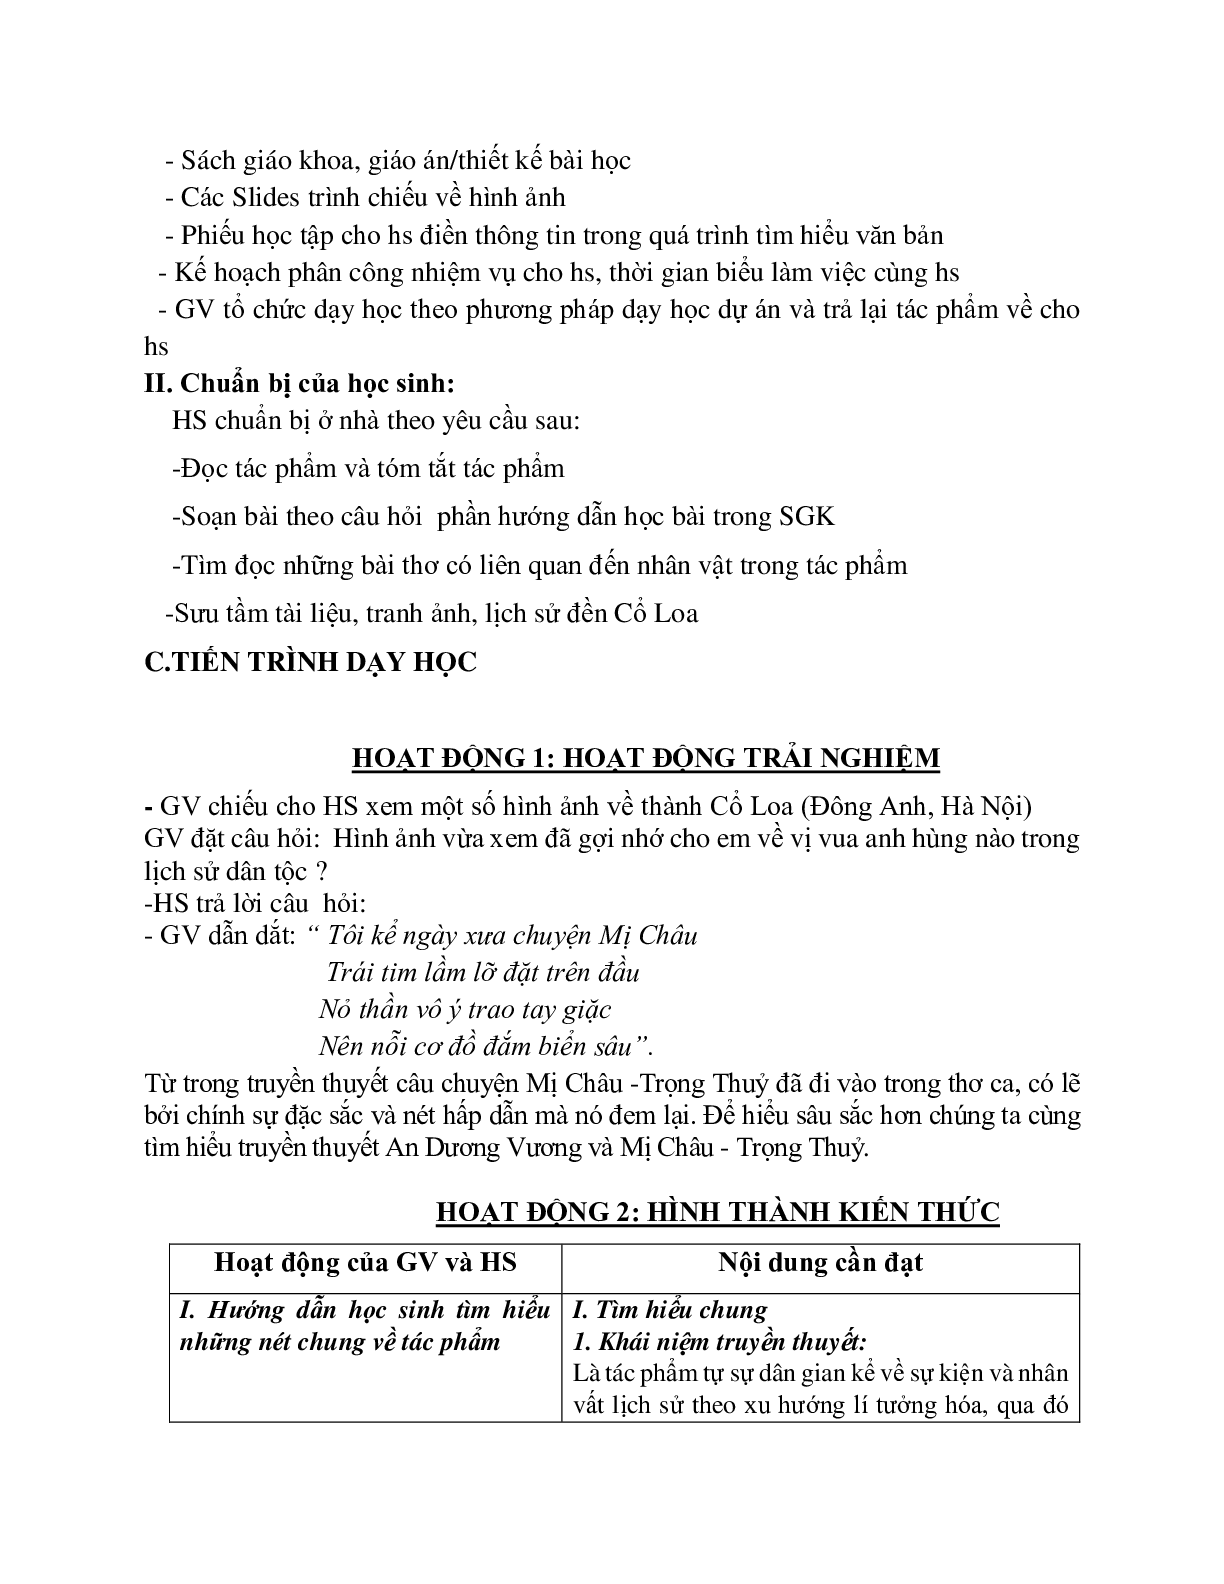 Giáo án ngữ văn lớp 10 Tiết 12, 13: Truyện An Dương Vương và Mị Chậu Trọng Thủy (trang 2)